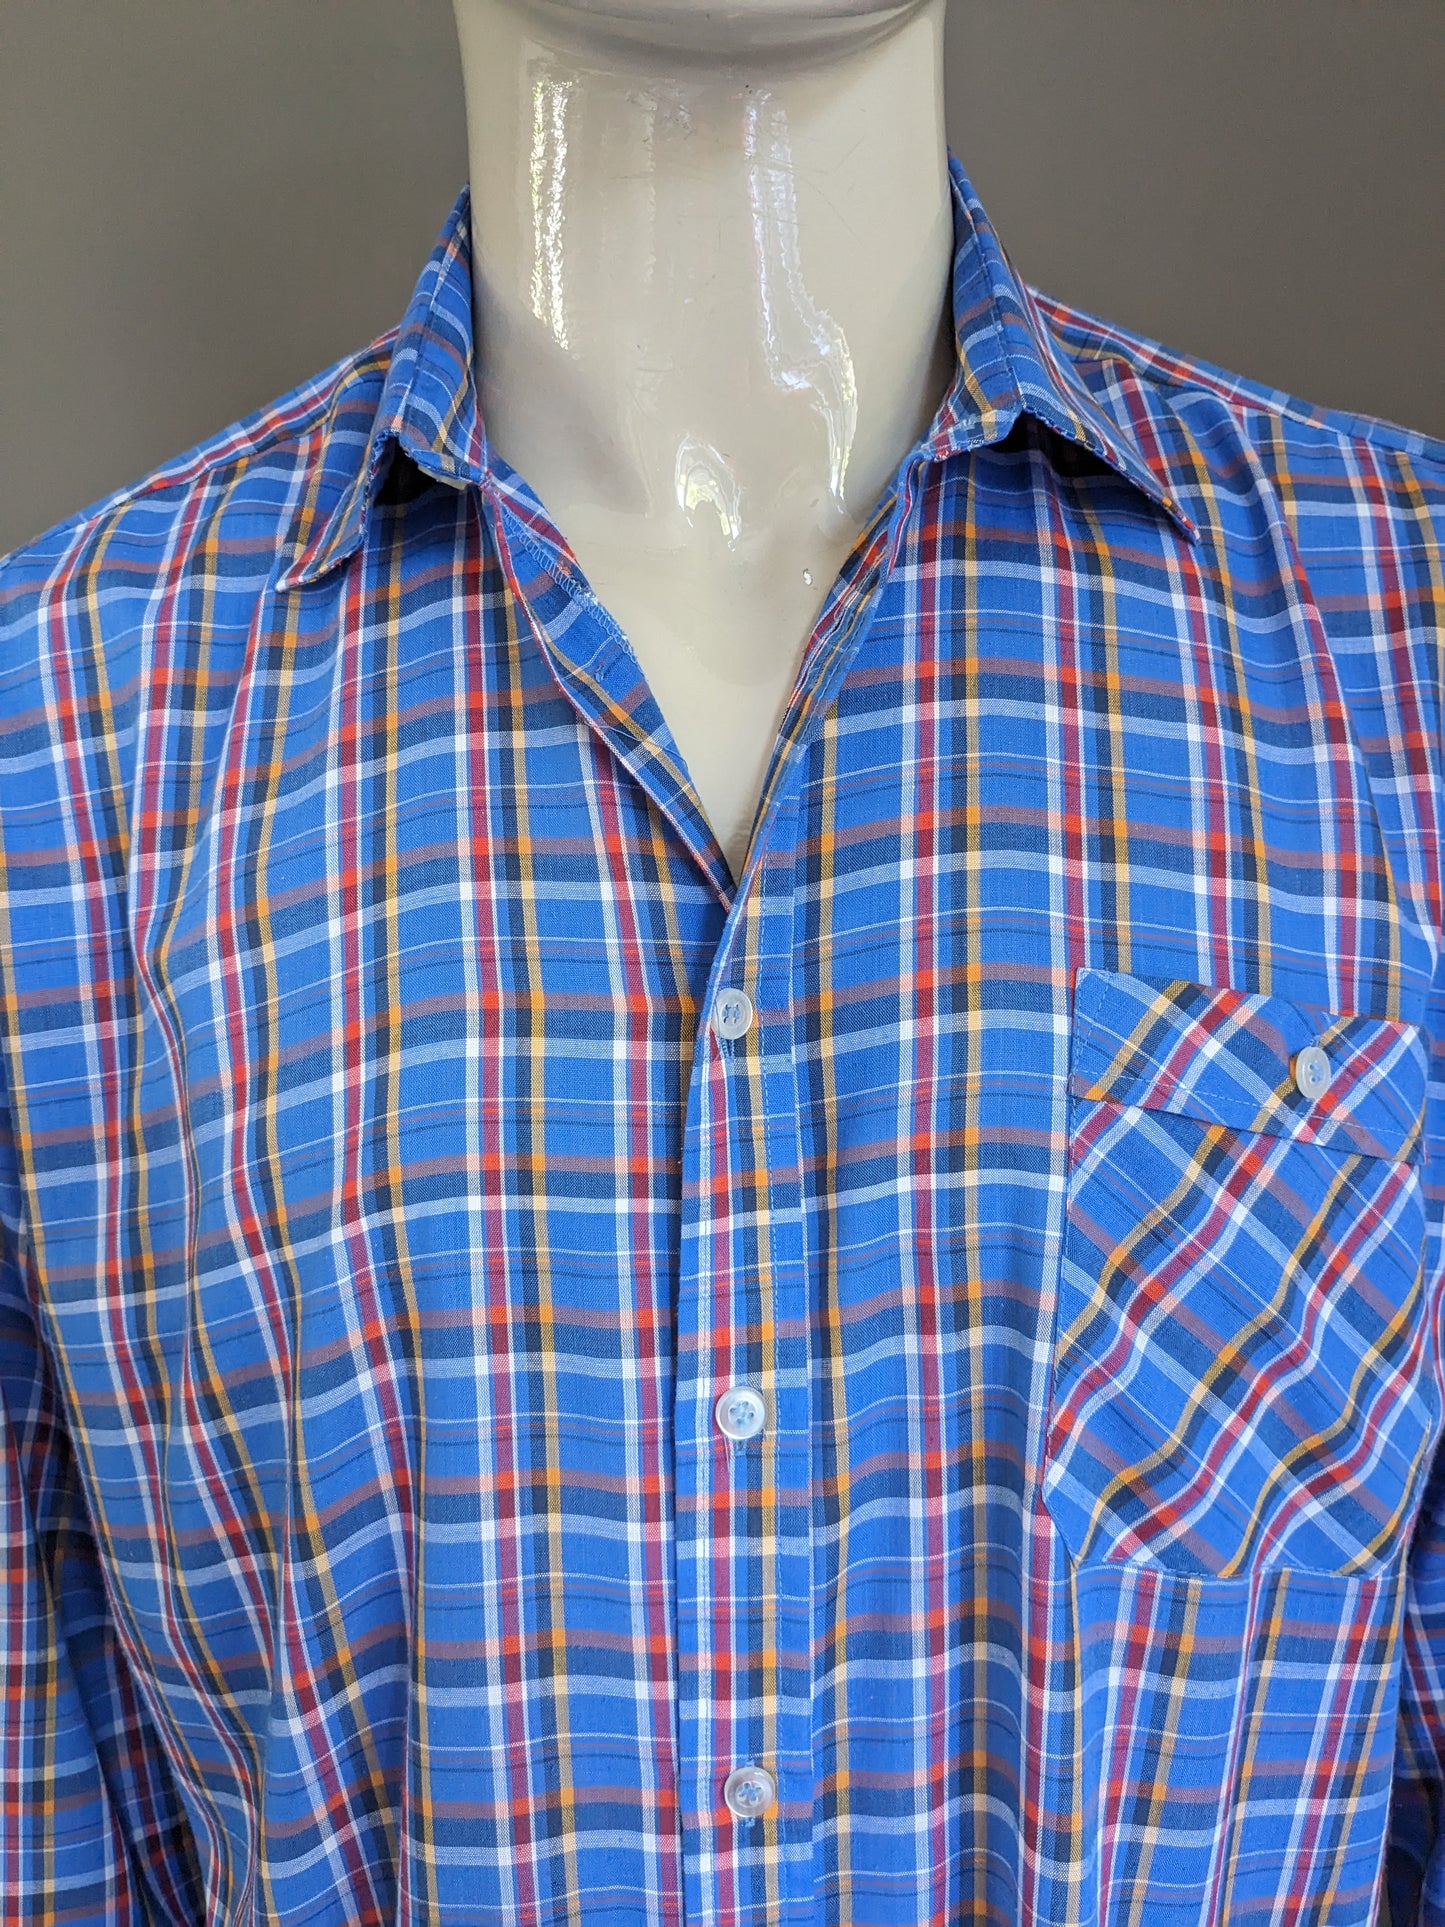 Vintage 70's Atelier overhemd. Blauw Rood Geel geruit. Maat XL.